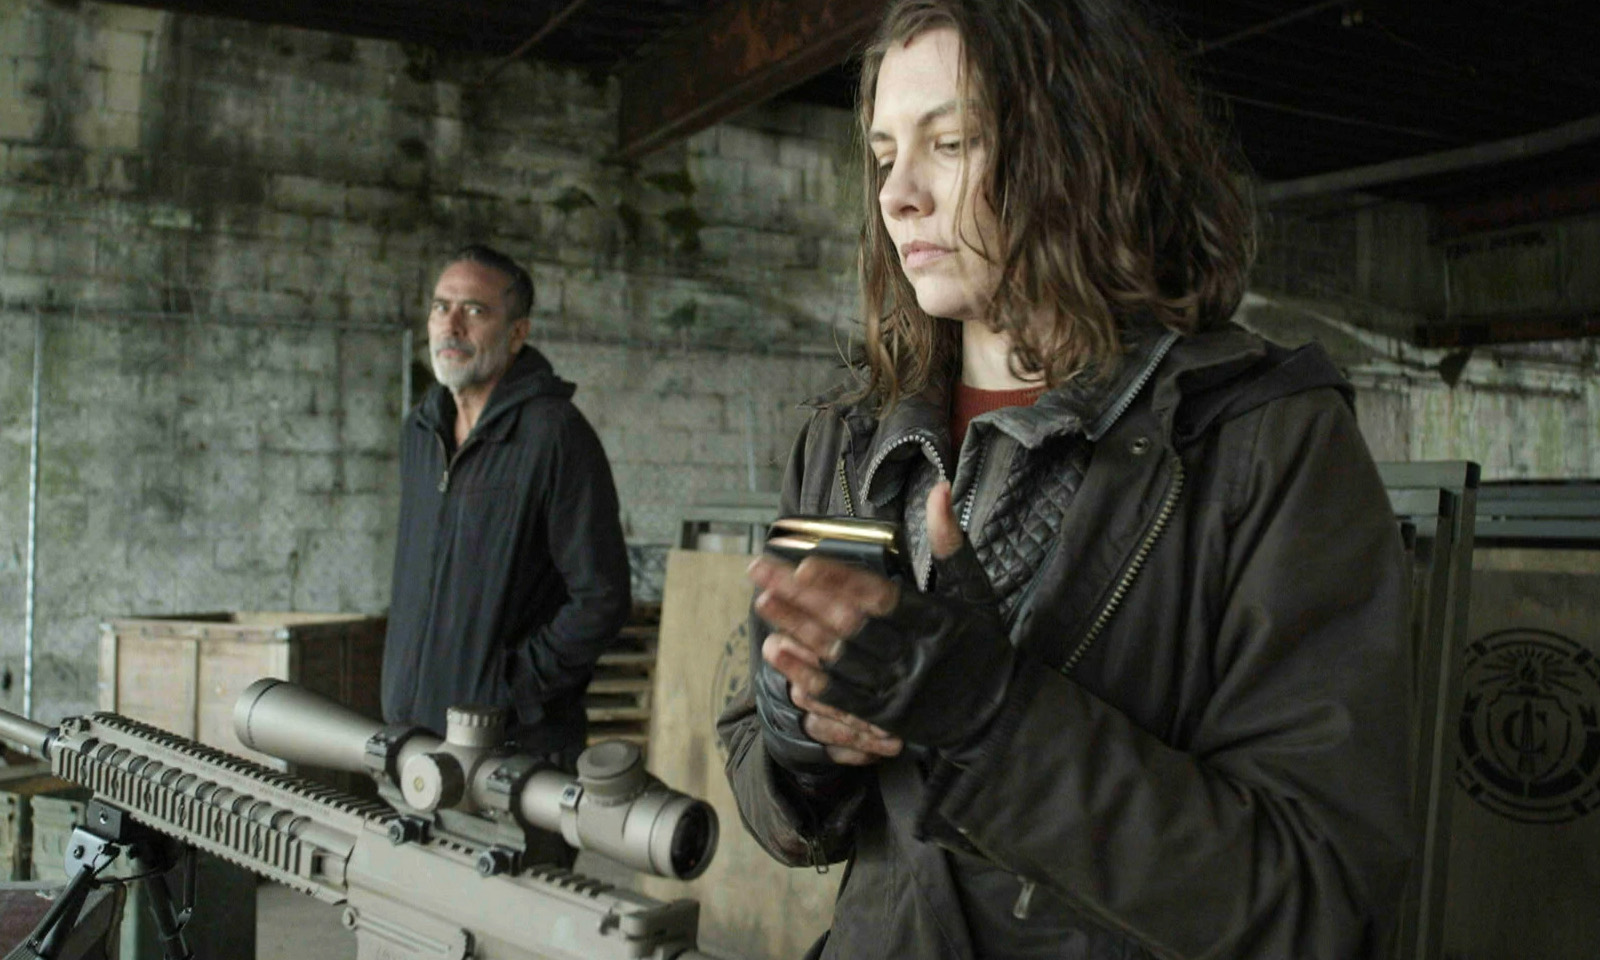 Maggie preparando sua arma enquanto Negan a observa em cena do episódio 24 da 11ª temporada de The Walking Dead.